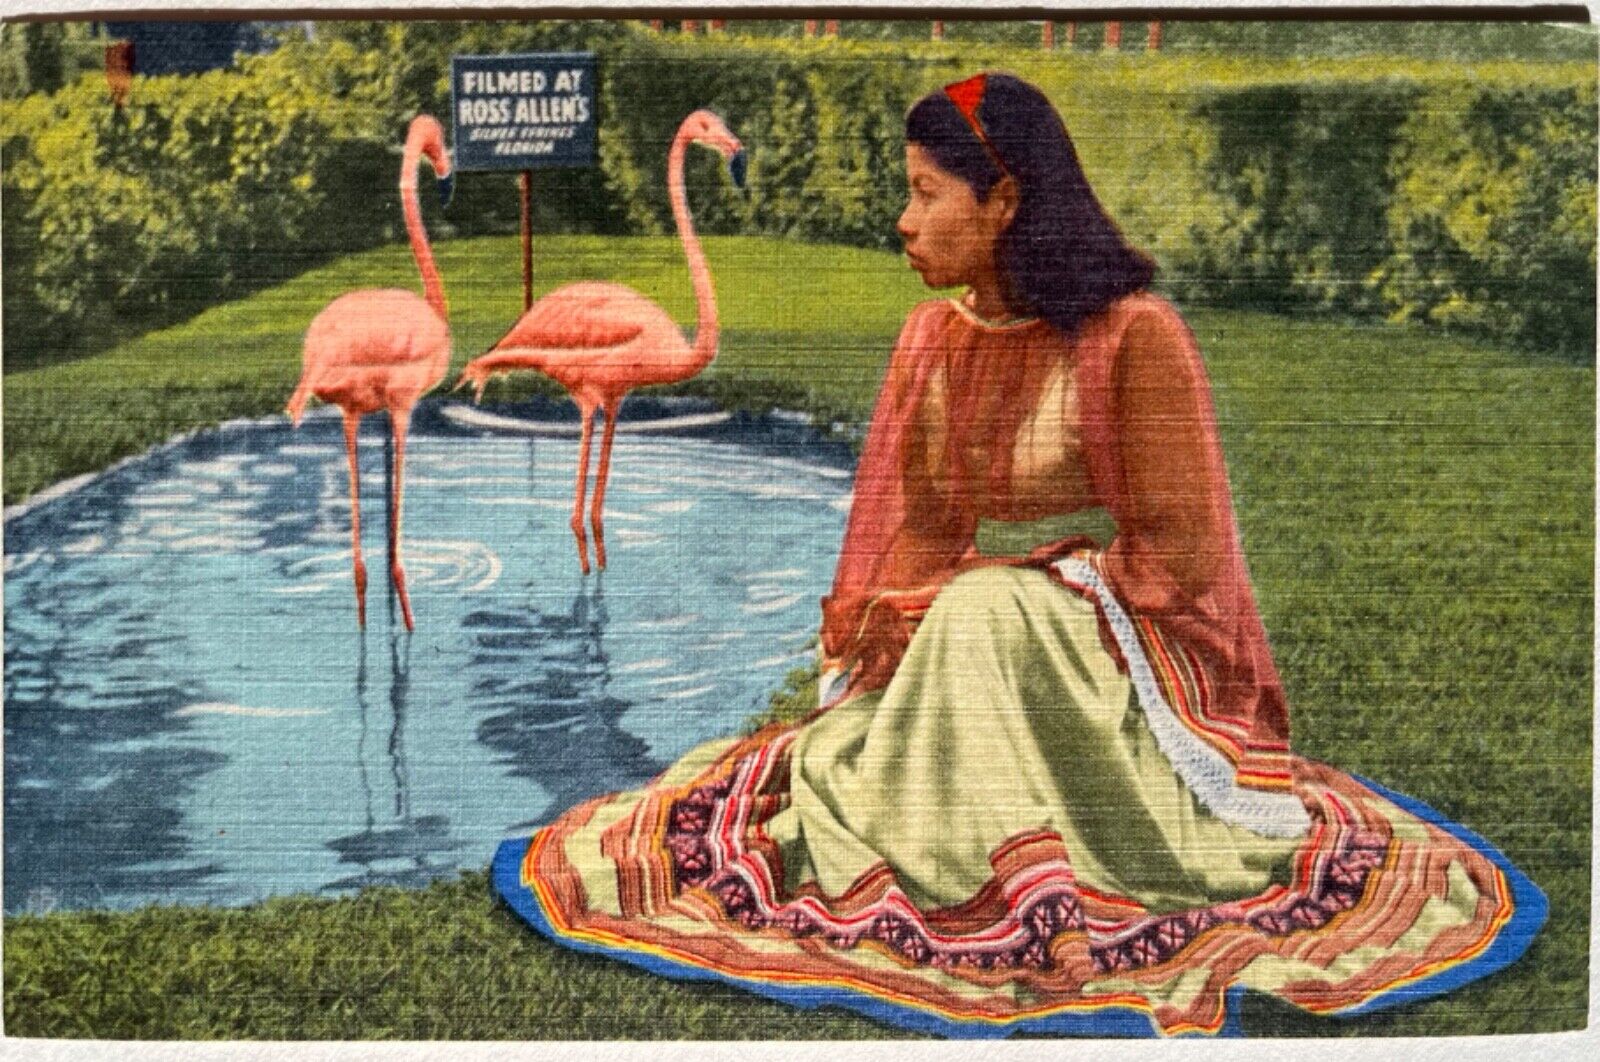 Silver Springs Seminole Girl Flamingos Ross Allen Florida Reptiles Postcard 1957